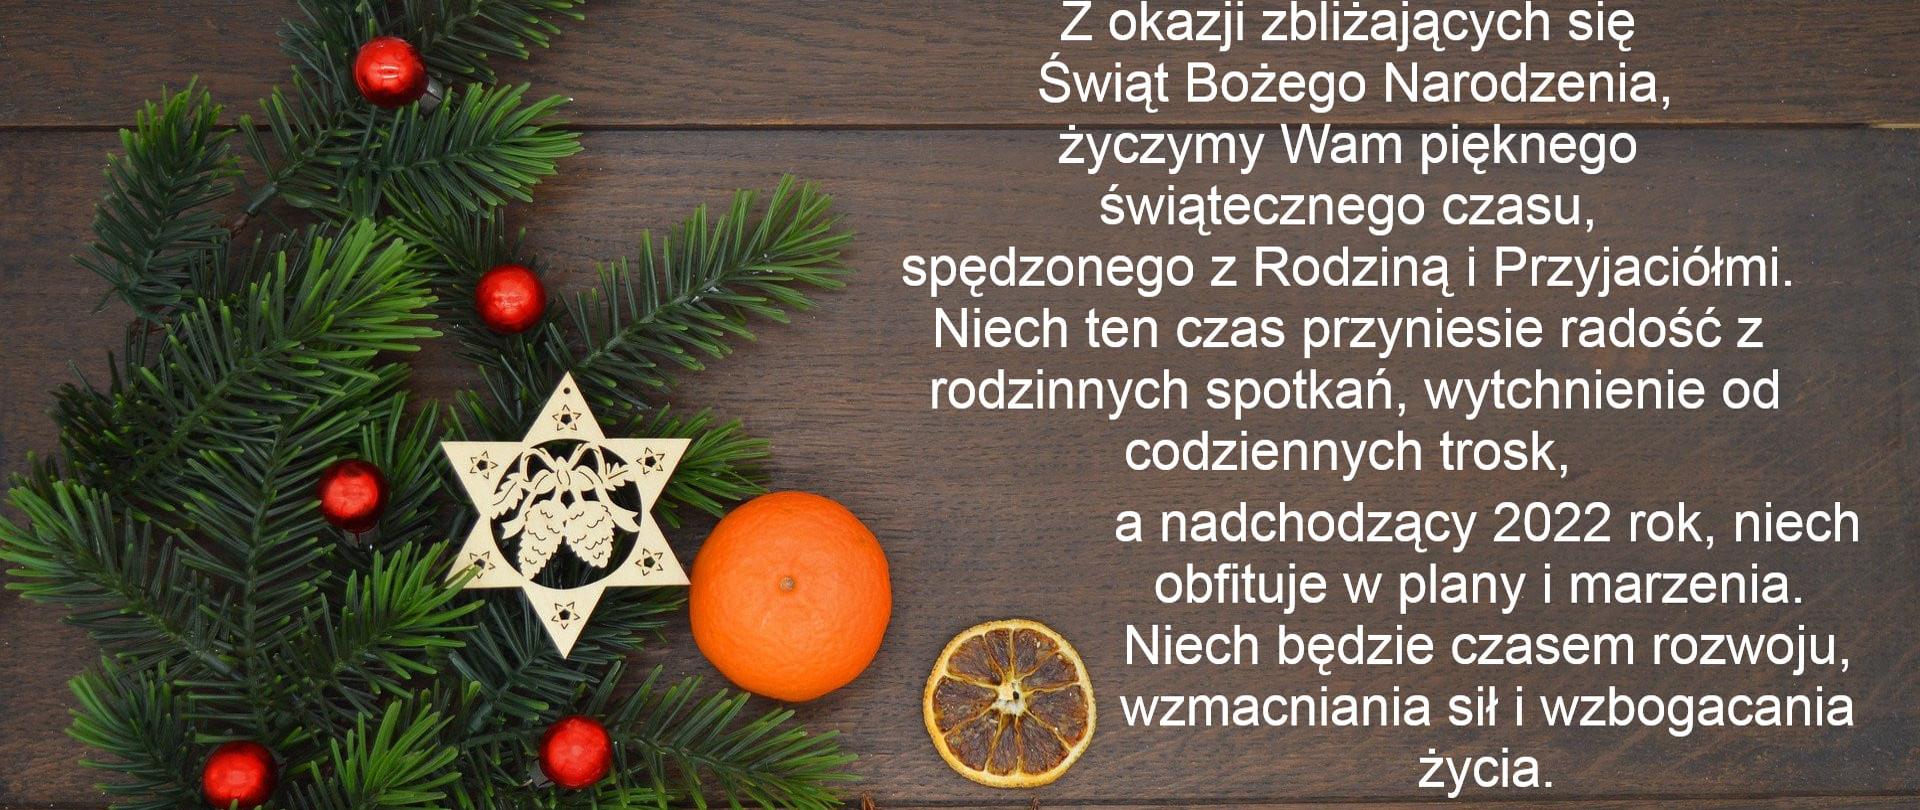 Życzenia na Boże Narodzenie, kartka świąteczna, świerk, pomarańcza, bombki